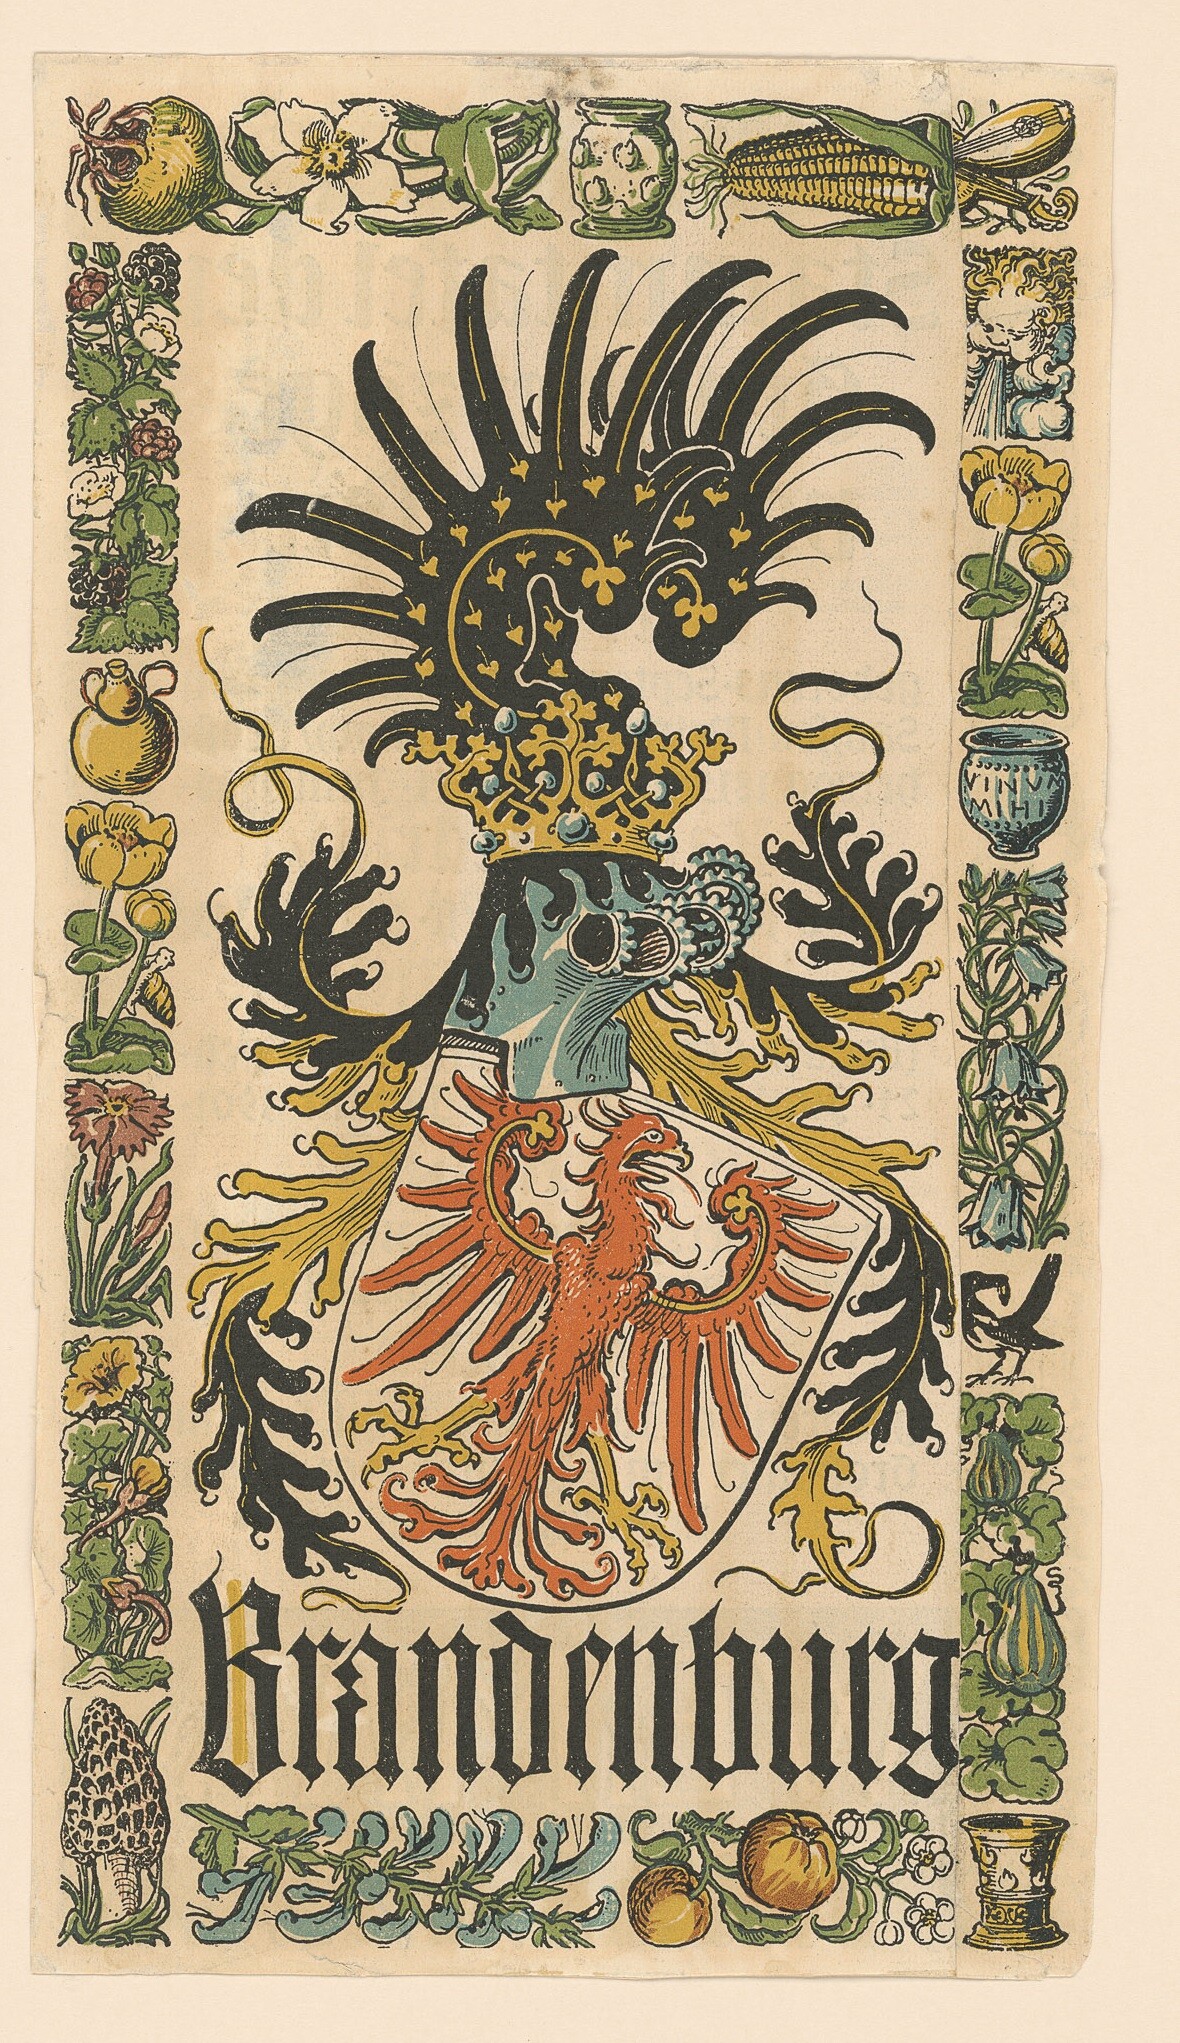 Farbdruck mit dem Wappen Brandenburgs (Museen Burg Altena CC BY-NC-SA)